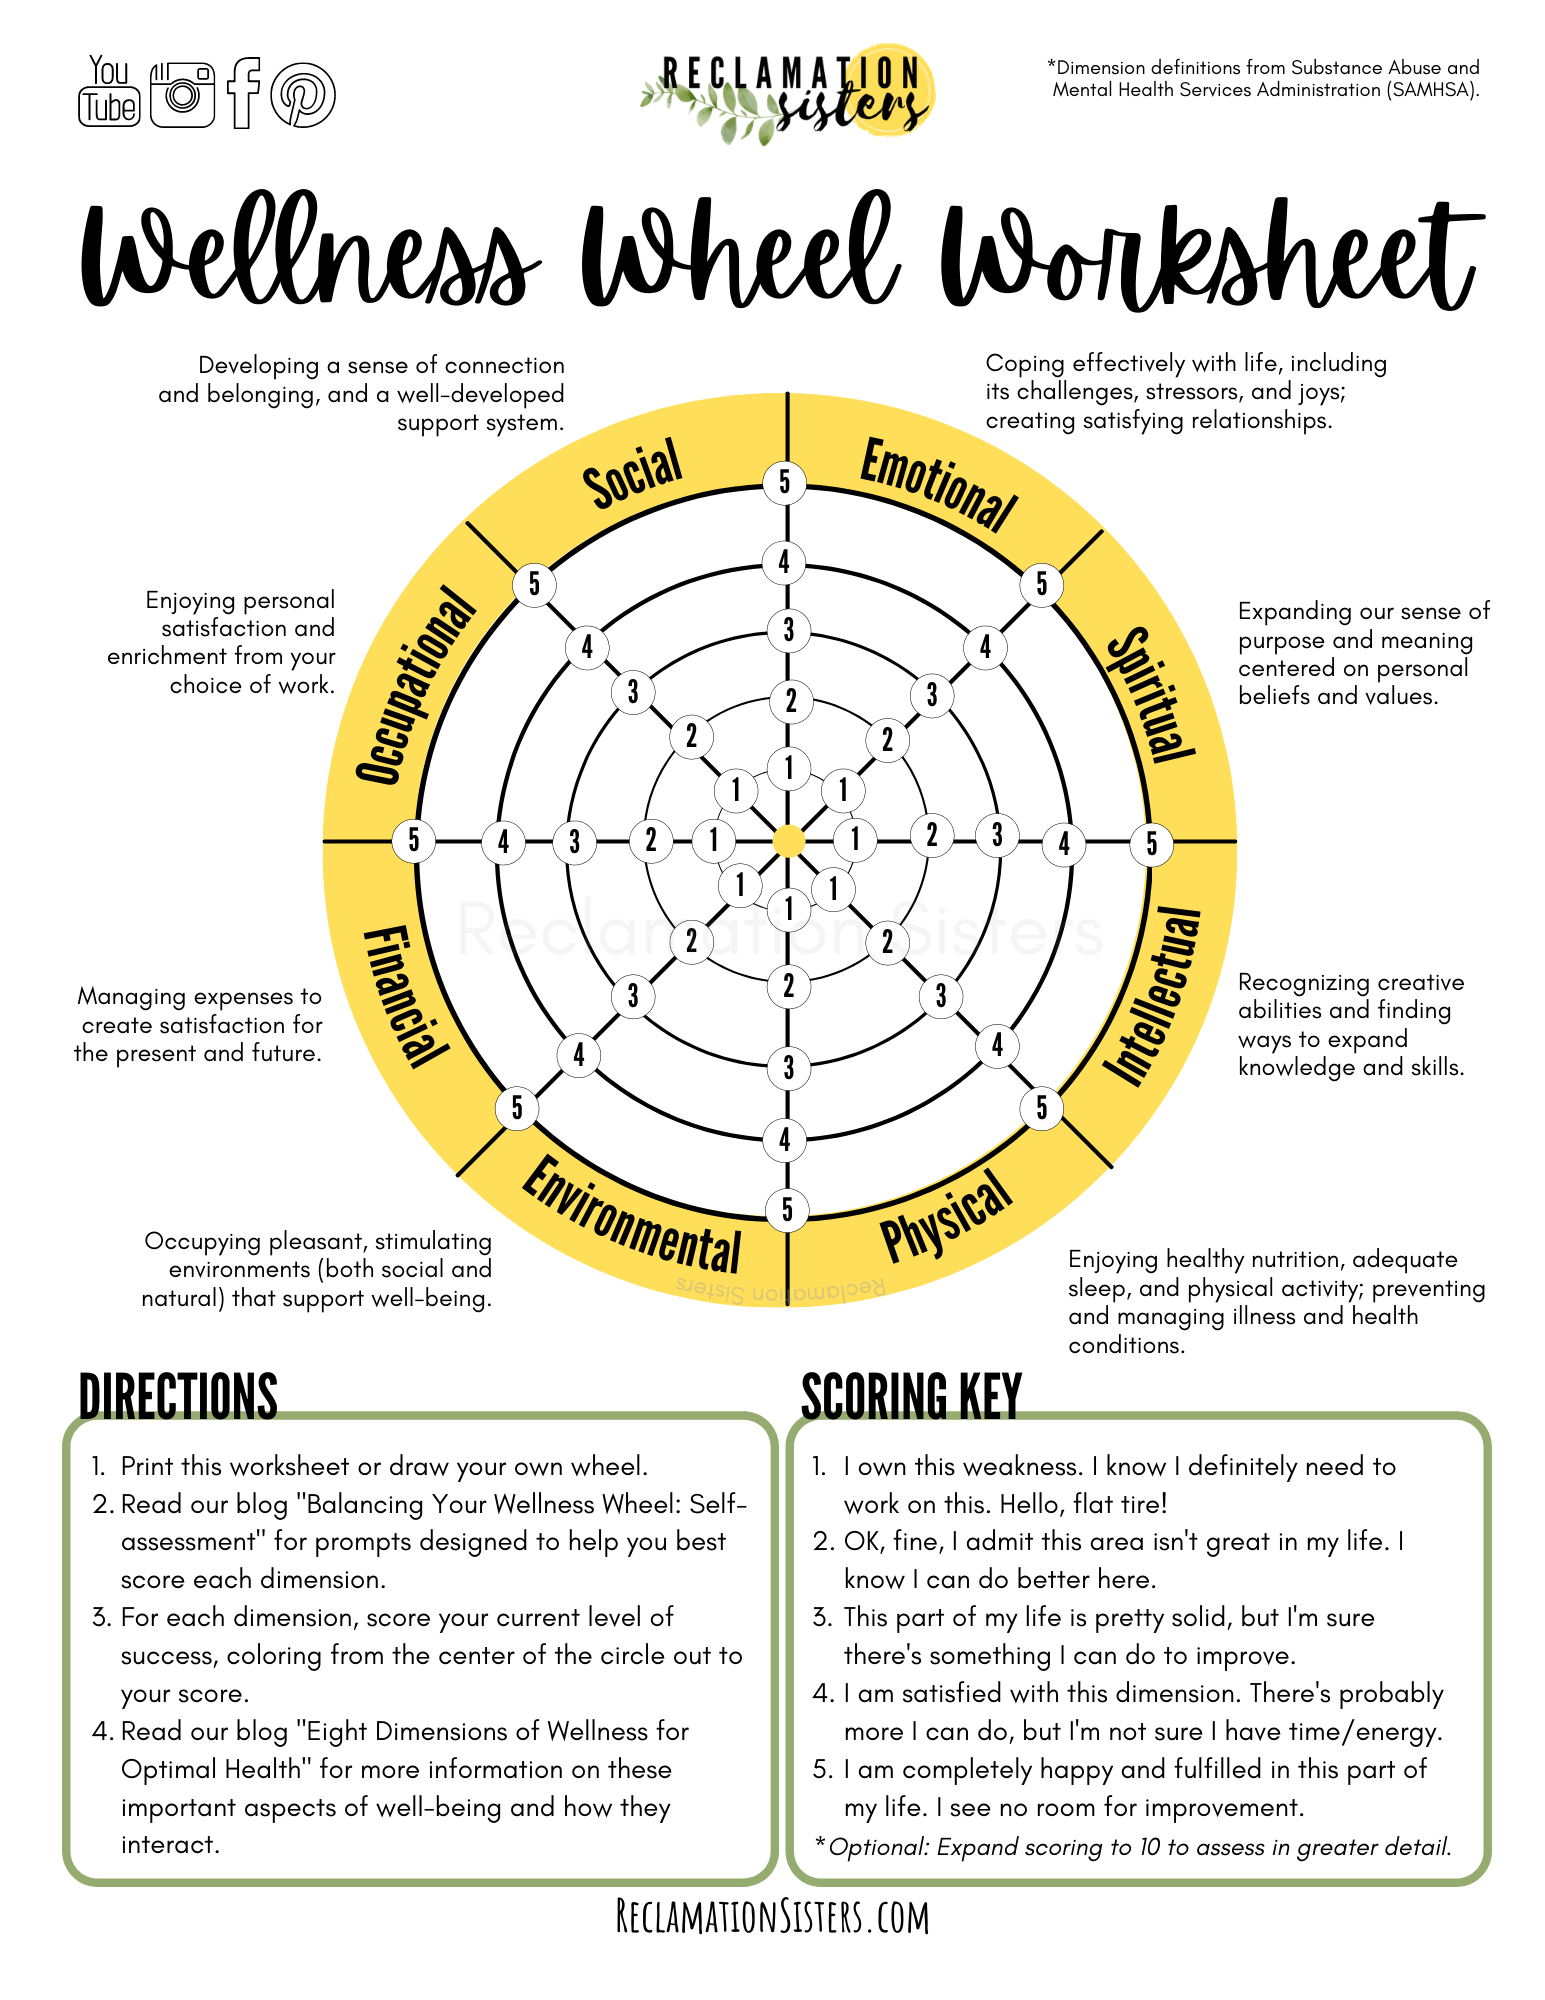 Balancing Your Wellness Wheel: Self-assessment